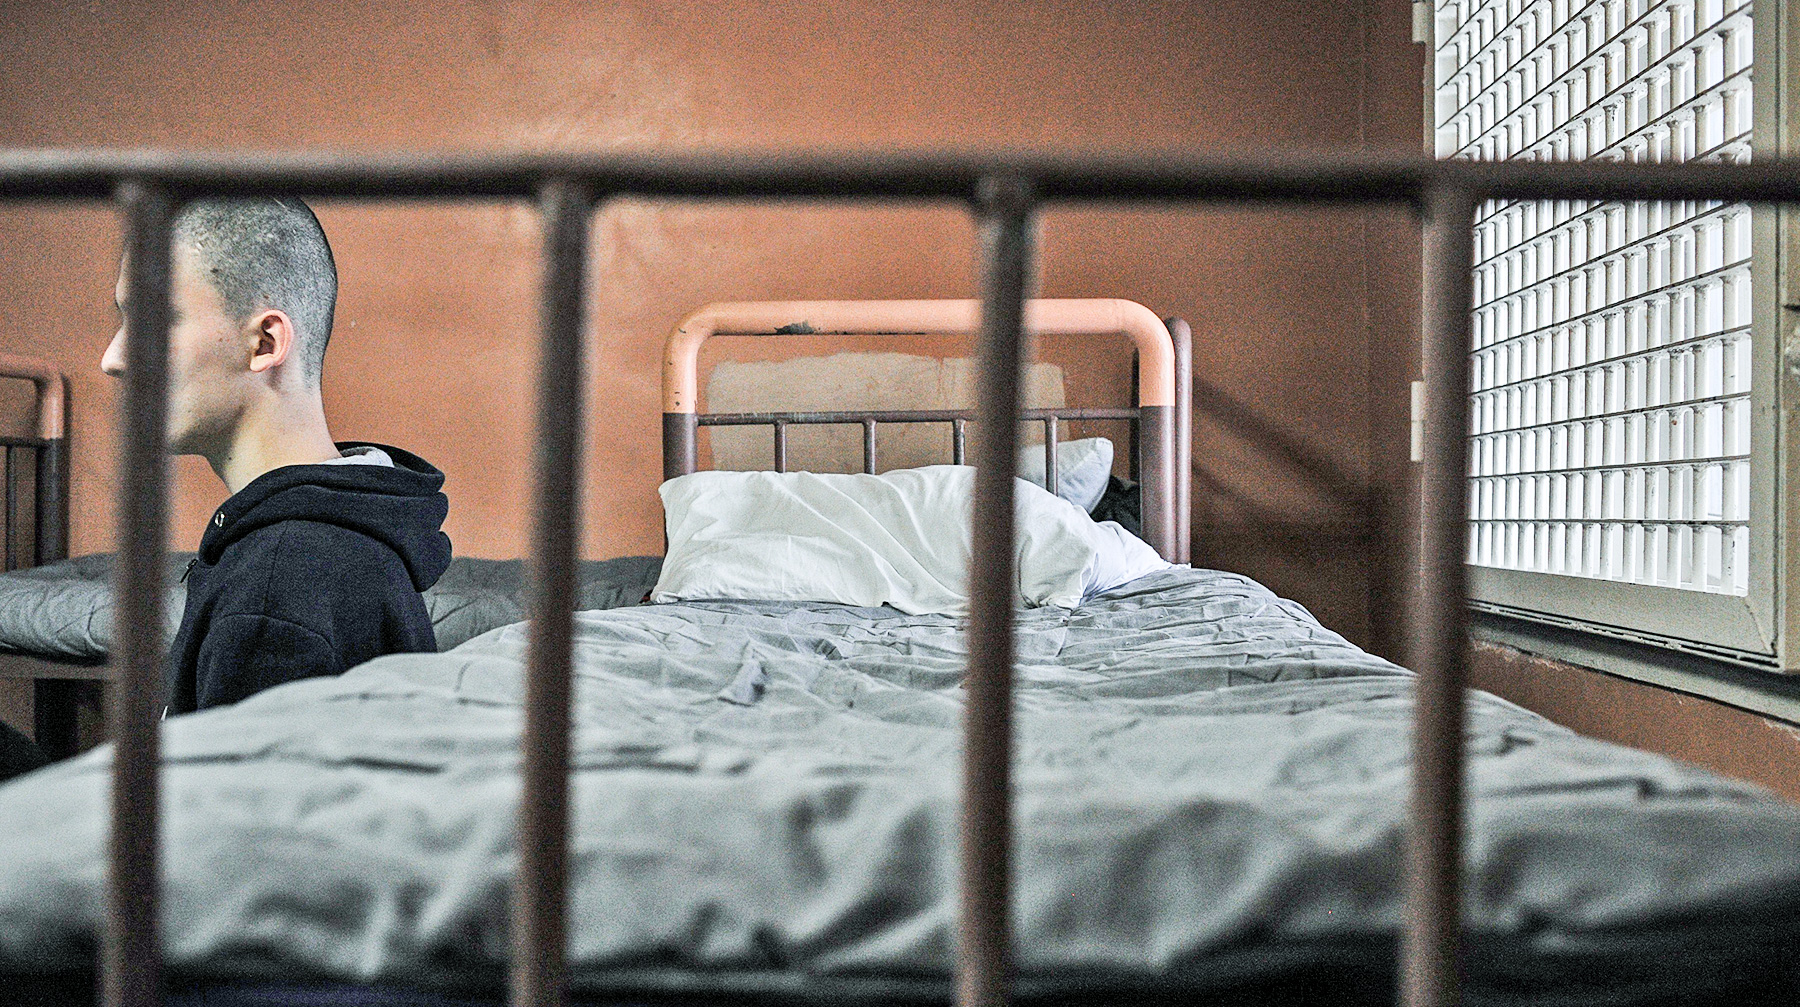 Арестанты смогут посмотреть традиционное обращение президента страны и лечь спать в час ночи Фото: © Агенство Москва / Любимов Андрей